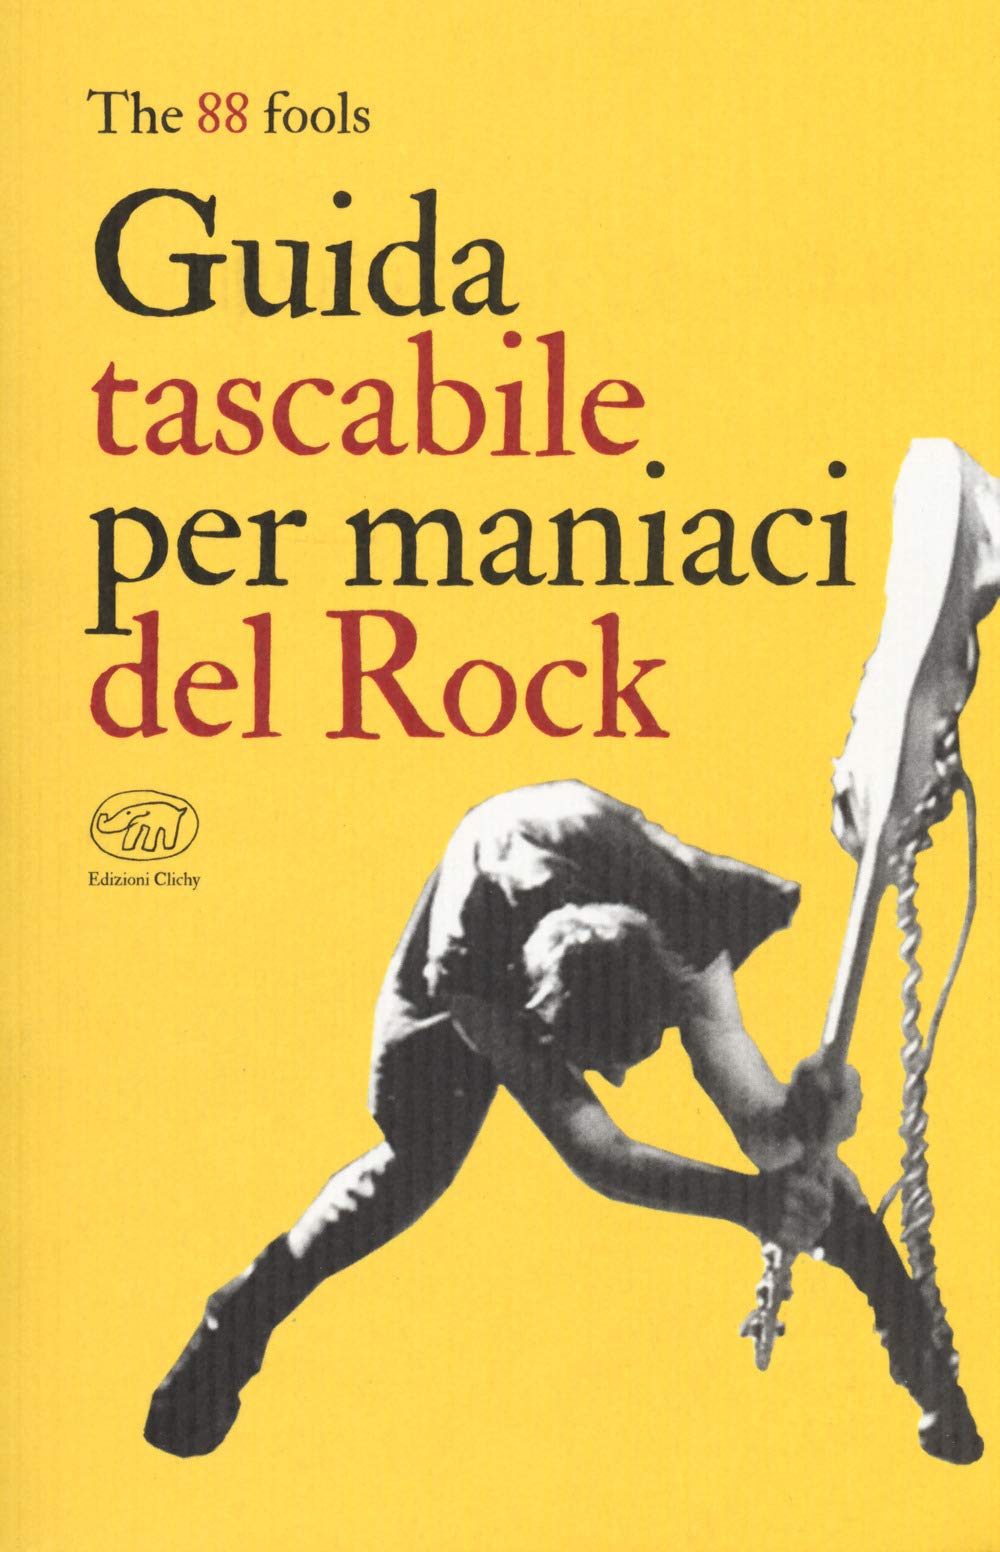 Guida tascabile per maniaci del rock - The 88 fools - Edizioni Clichy